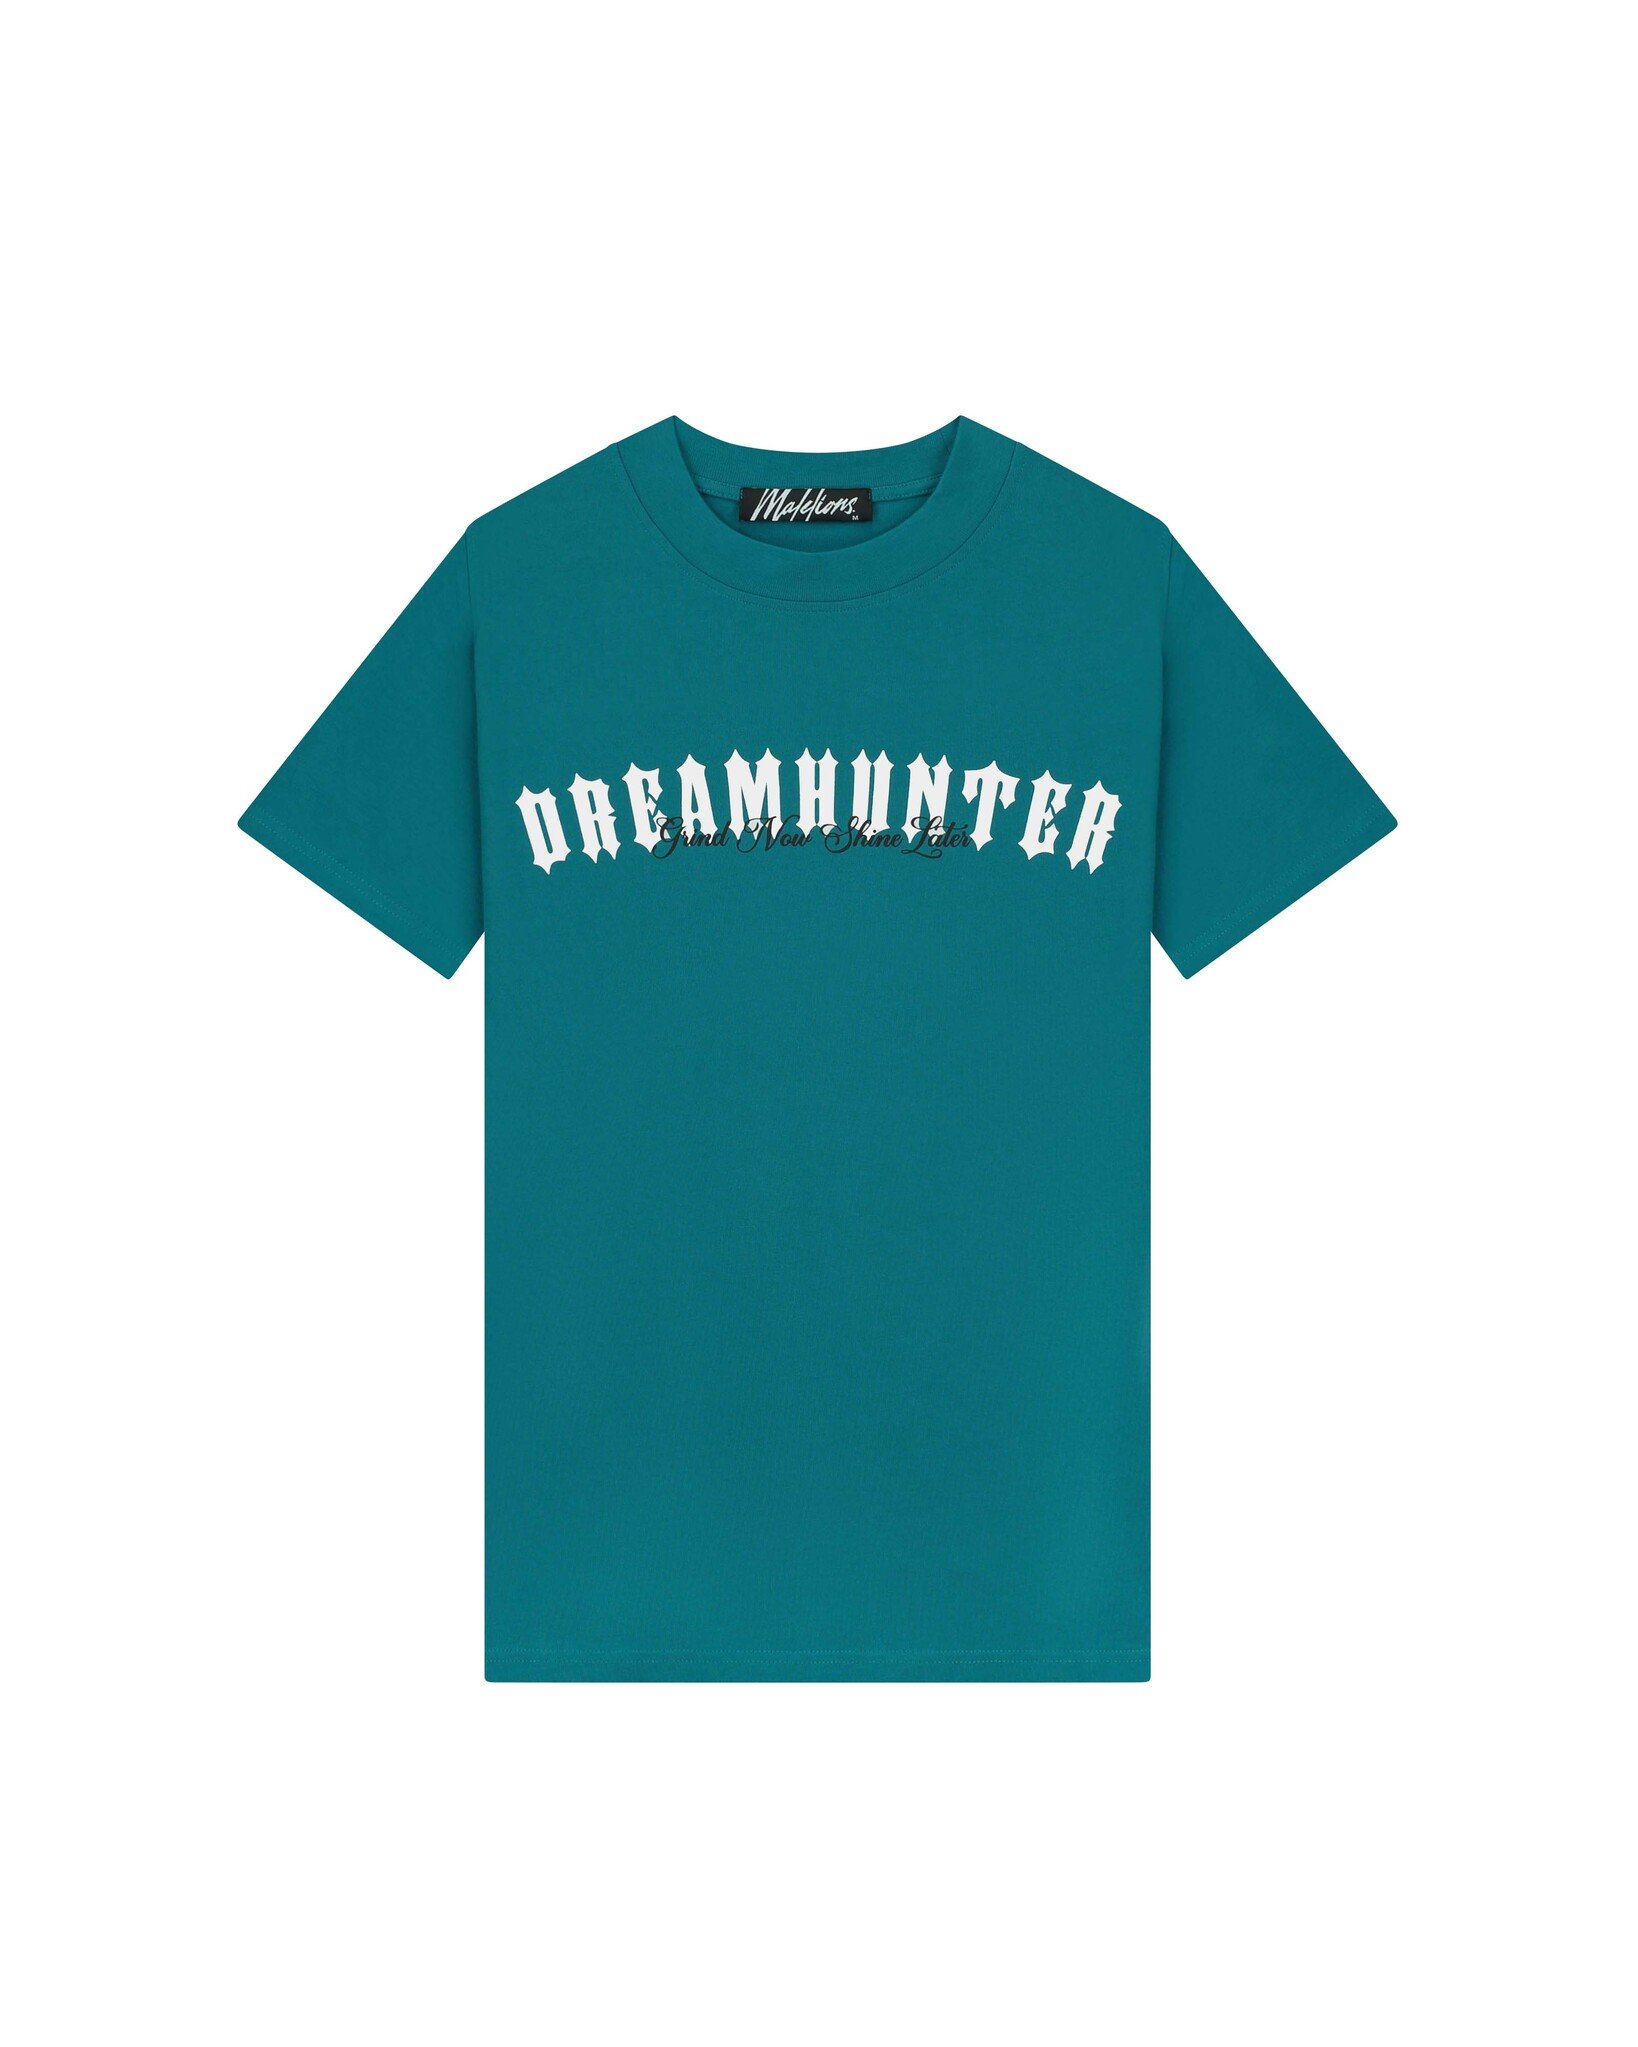 Malelions Men Dreamhunter T-Shirt - Teal/White